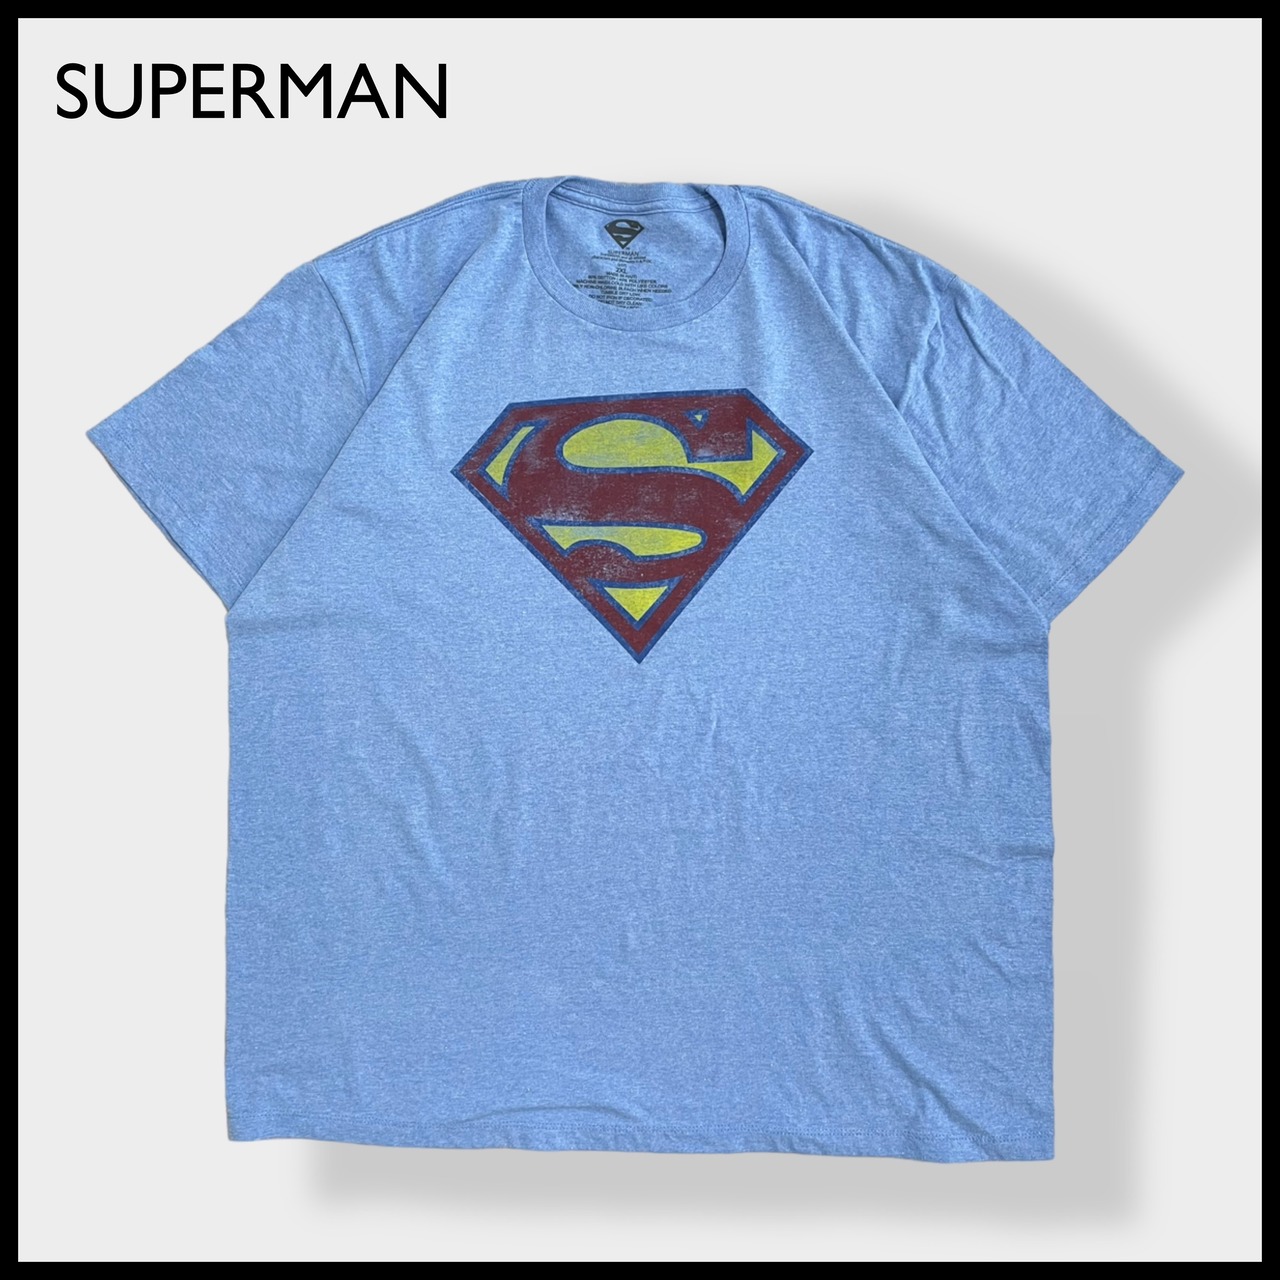 【SUPERMAN】2XL ビッグサイズ Tシャツ スーパーマン キャラt アメコミ DCコミック 映画 ヒーロー ロゴ プリント 半袖 ライトブルー US古着